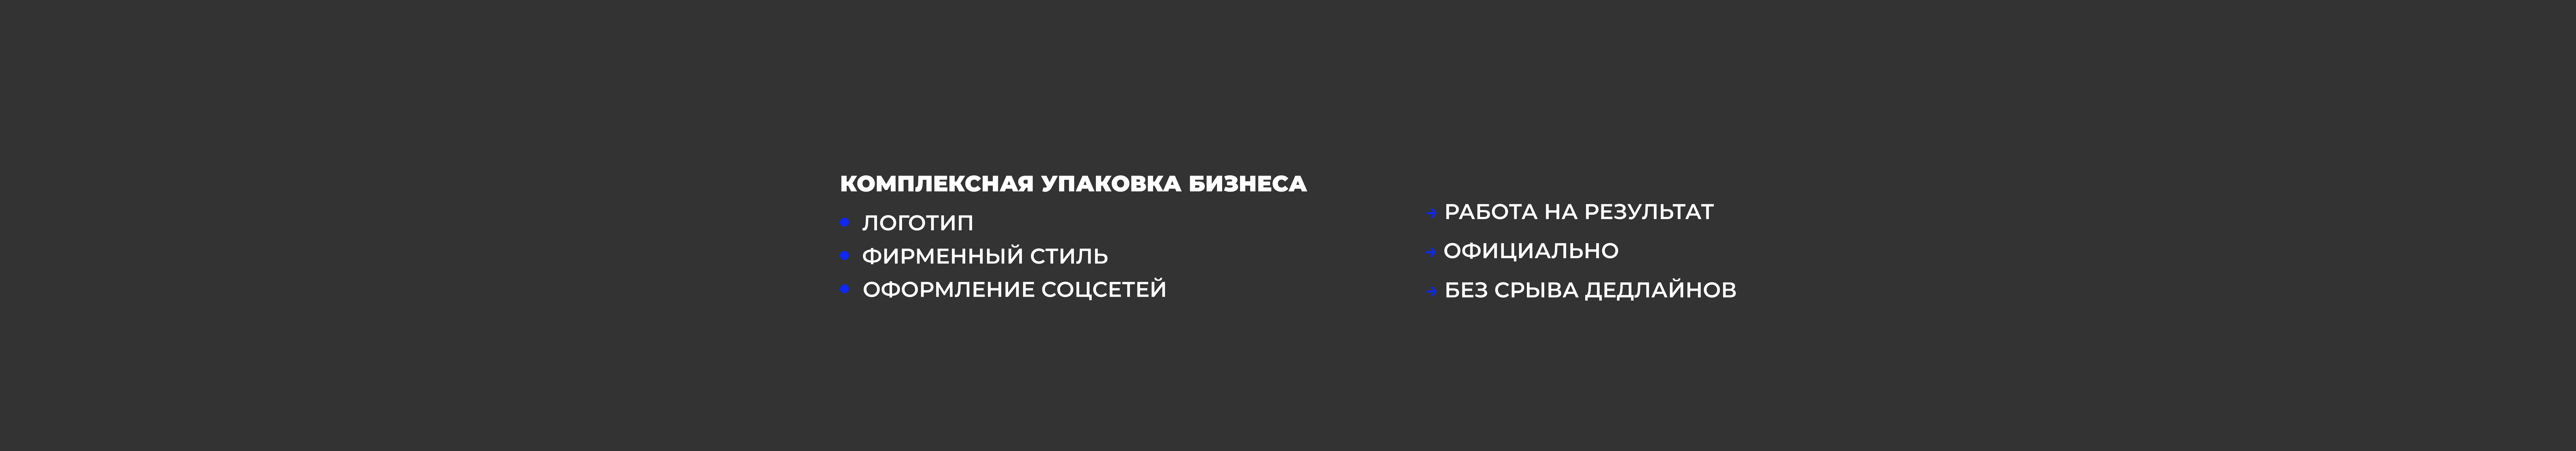 Banner de perfil de Наталья Владимирова